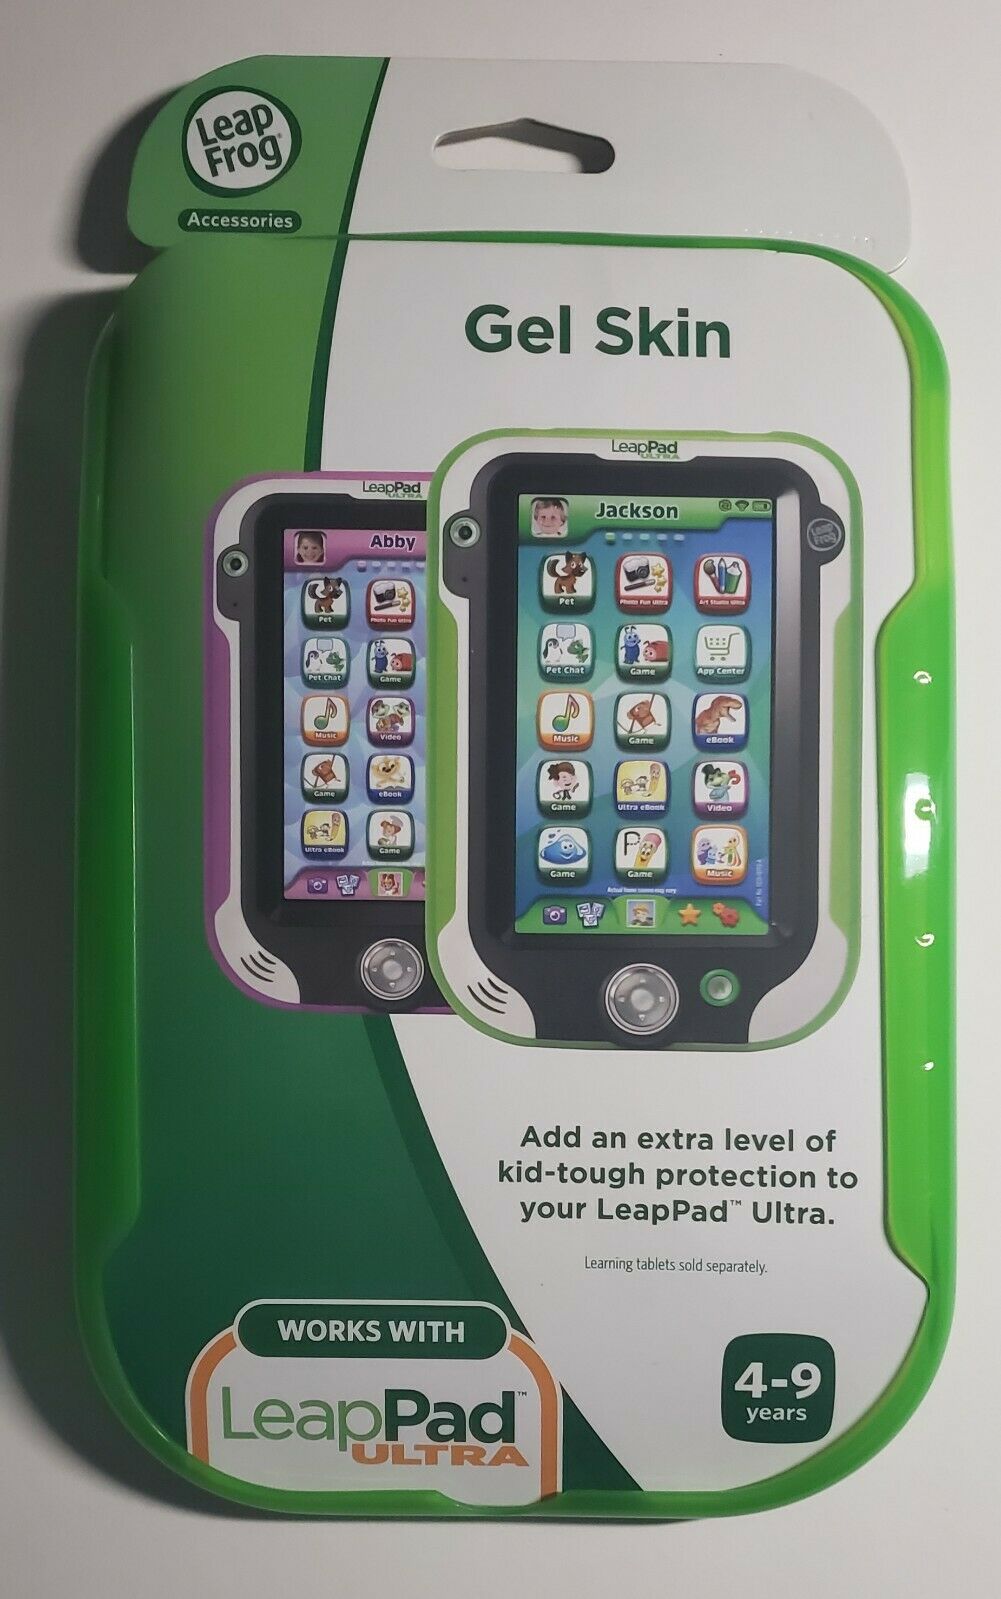 Leapfrog Leappad Ultra Gel Skin Green Skin Cover Case Brand New Ages 4-9